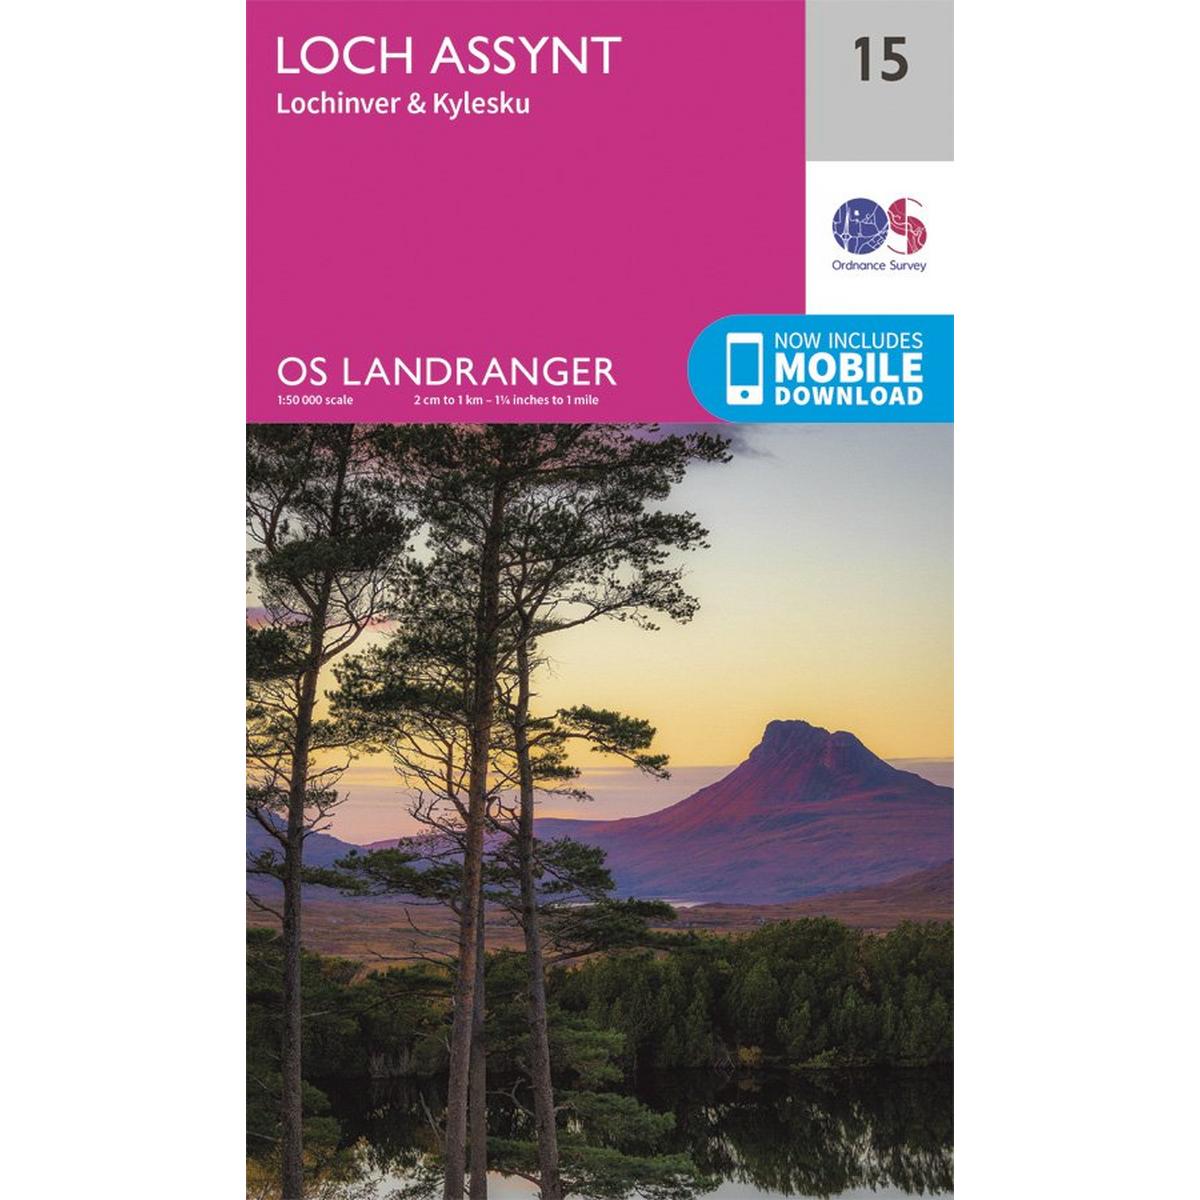 Ordnance Survey OS Landranger Map 15 Loch Assynt, Lochinver & Kylesku